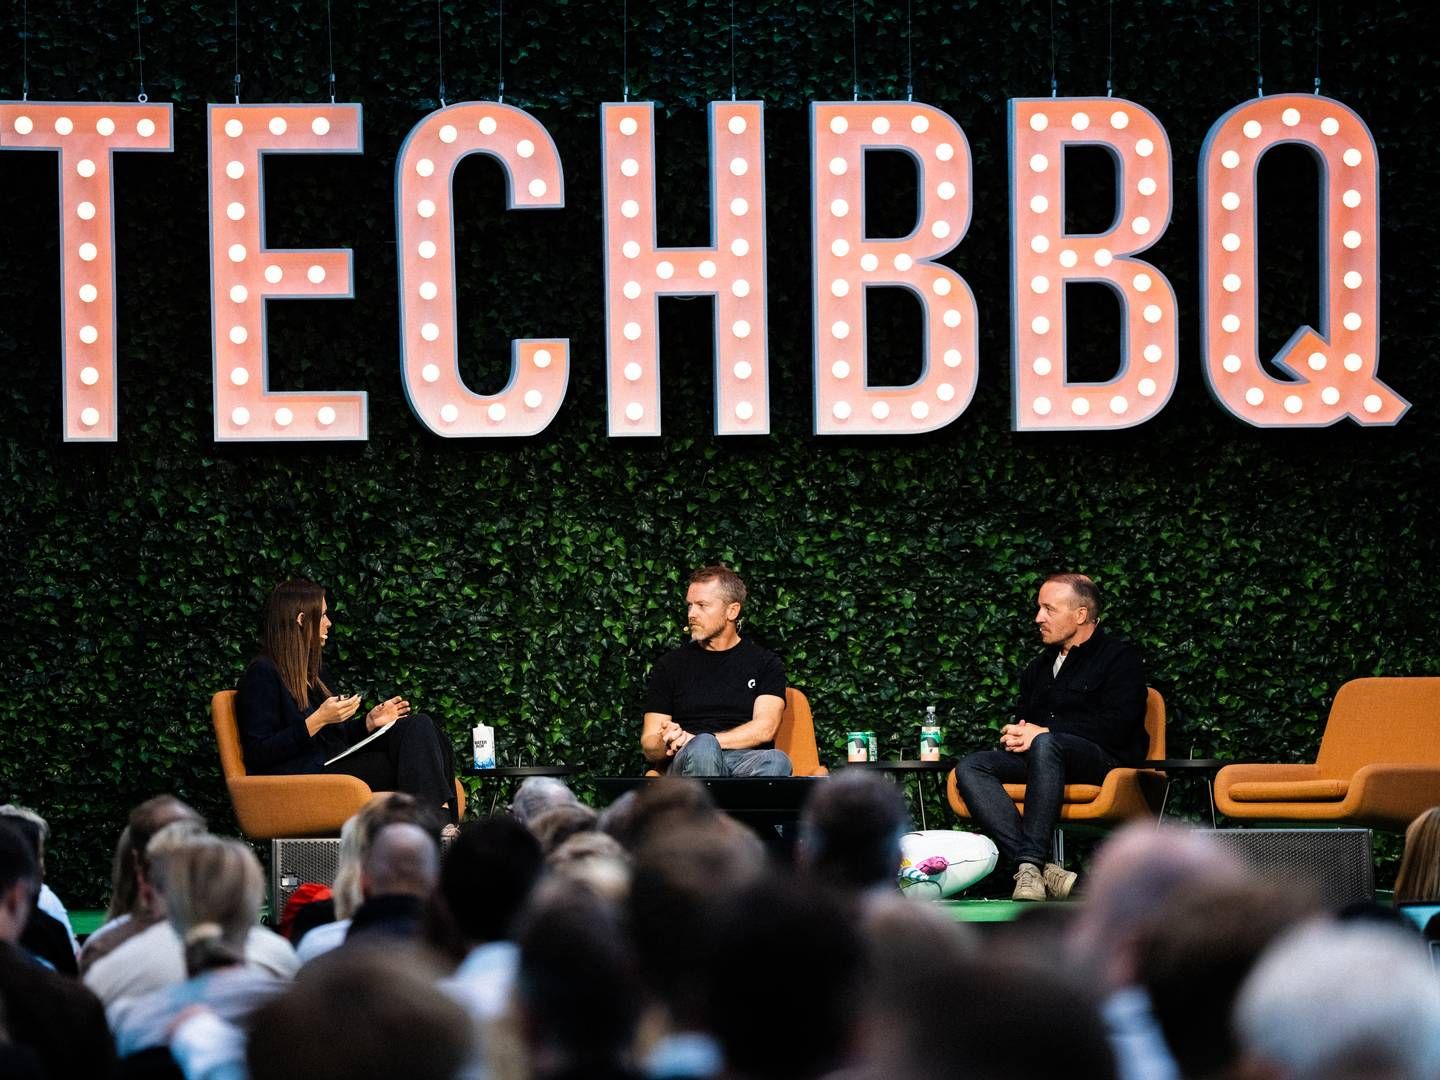 TechBBQ afholdes onsdag og torsdag i Lokomotivværkstedet i København. | Photo: Techbbq/pr